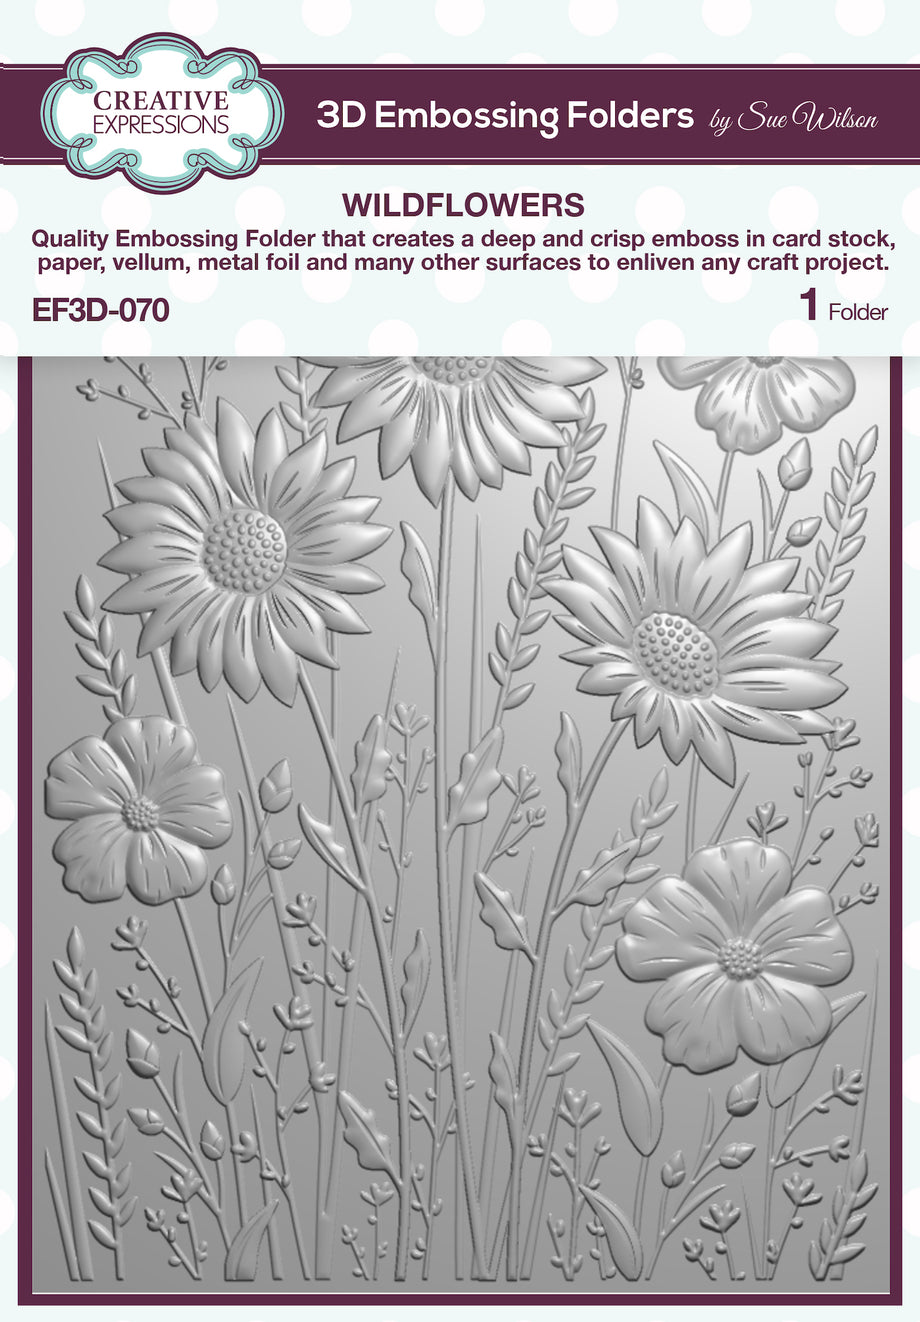 Spellbinders - 3D Embossing Folders - Basket Of Sunflowers